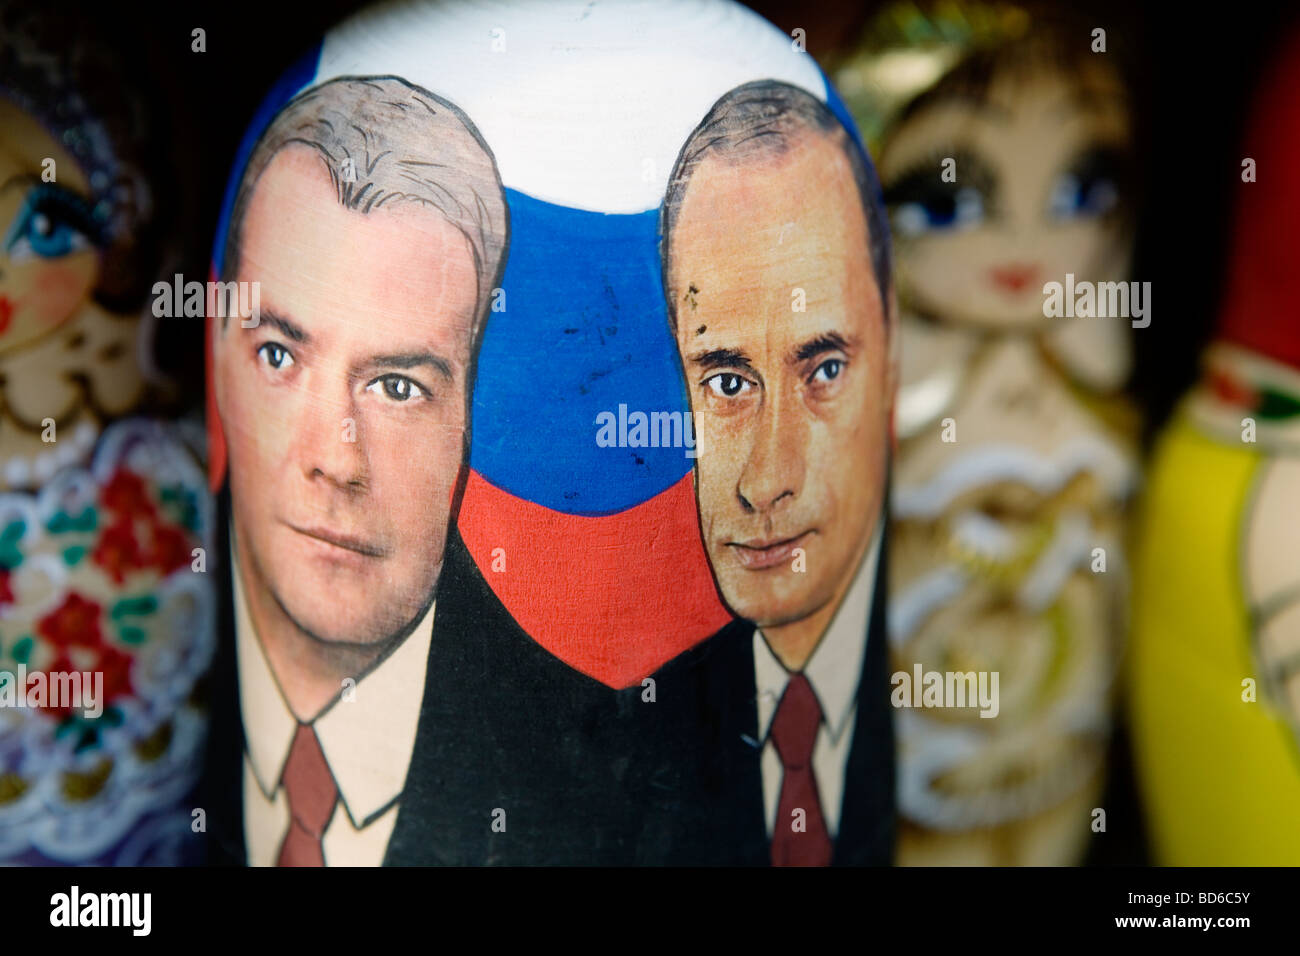 Putin und Medwedew porträtiert auf eine Matrjoschka (eine Puppe, die hat mehr ähnliche Puppen innen) in St. Petersburg, Russland. Stockfoto